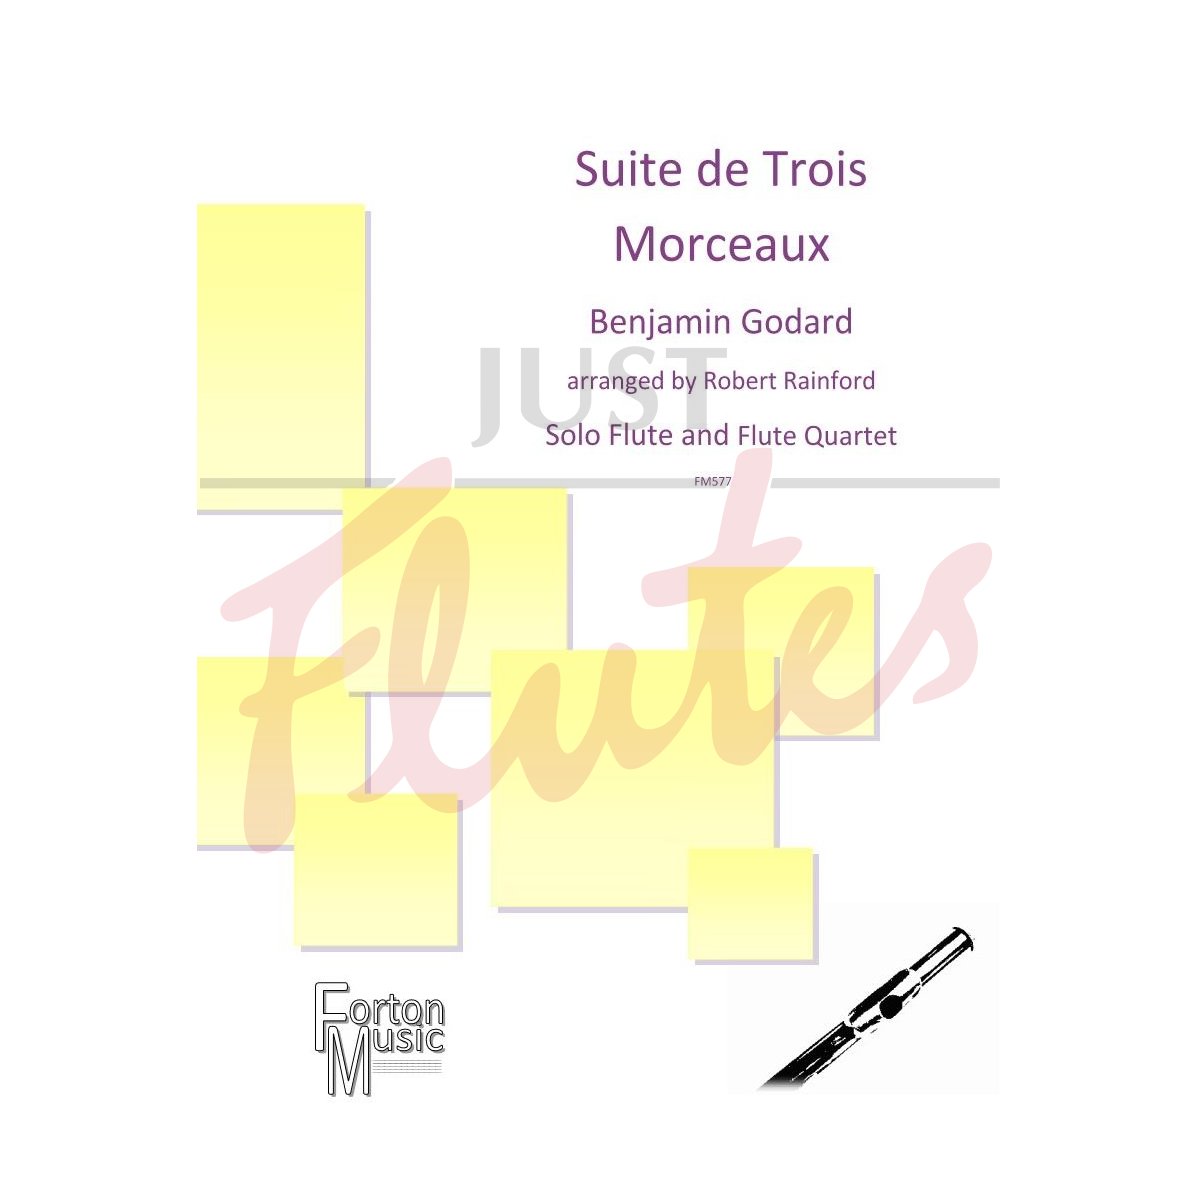 Suite de Trois Morceaux arranged for Solo Flute and Flute Quartet